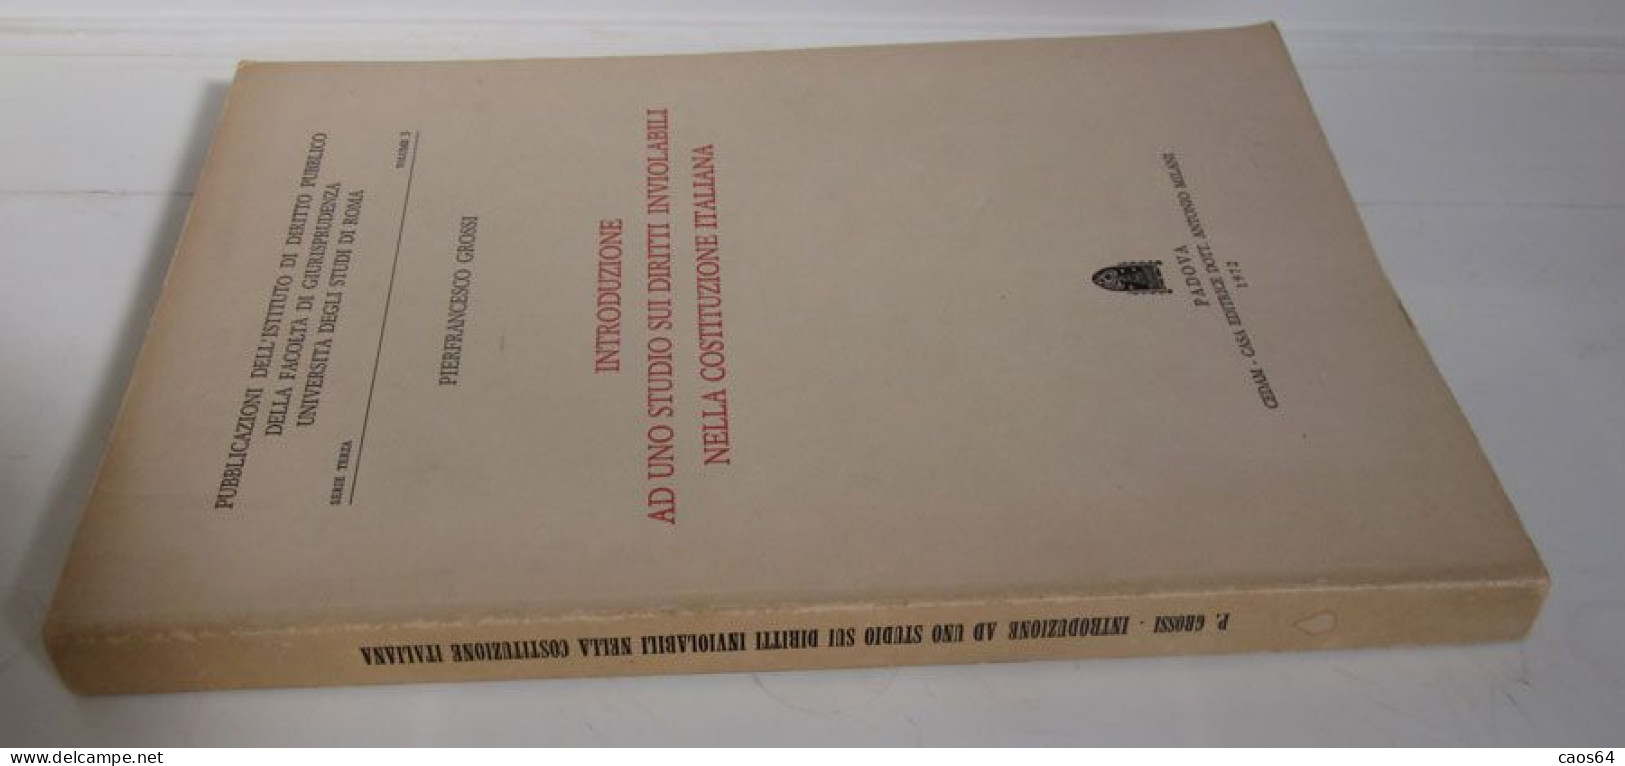 Introduzione Ad Uno Studio Sui Diritti Inviolabili Nella Costituzione Italiana 1972 Pierfrancesco Grossi CEDAM - Rechten En Economie